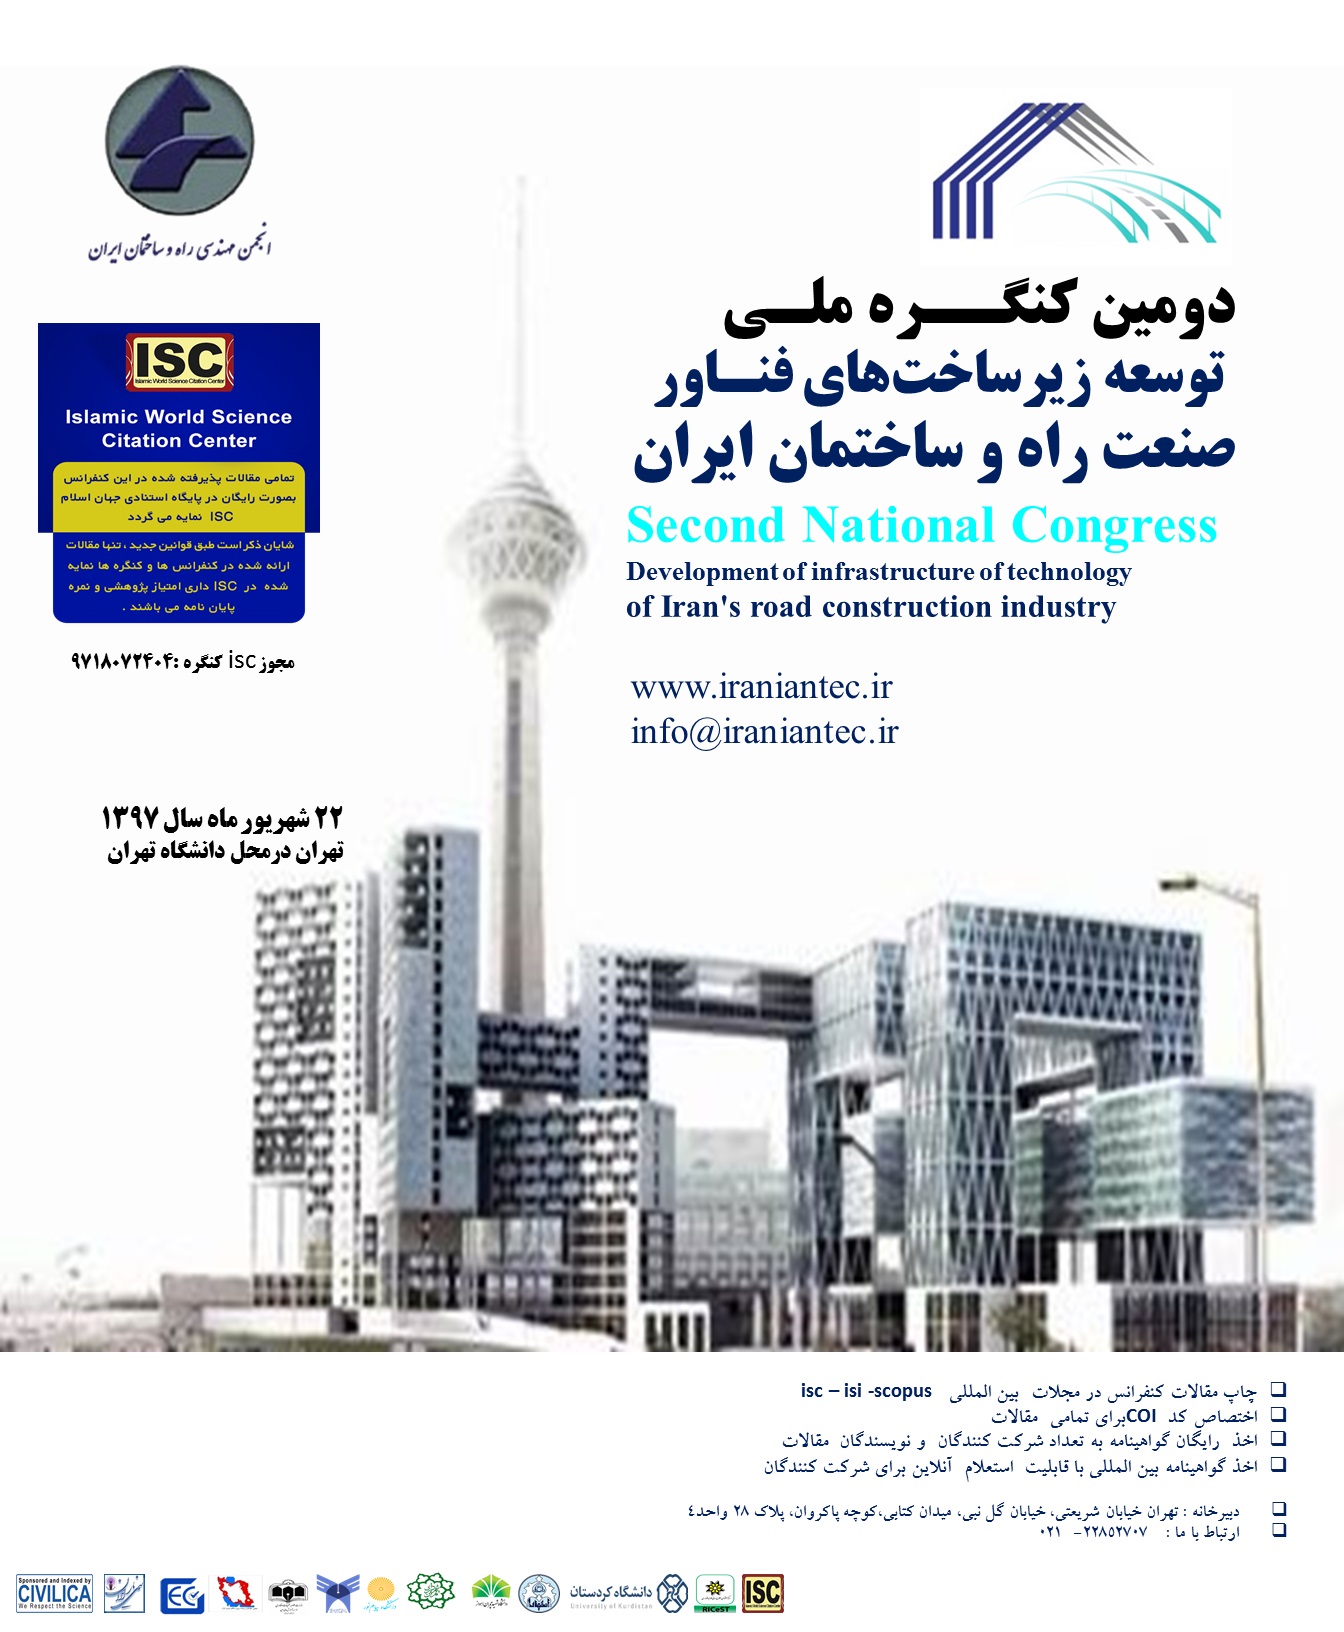 پوستر دومین کنگره ملی توسعه زیرساخت های فناور صنعت راه و ساختمان ایران